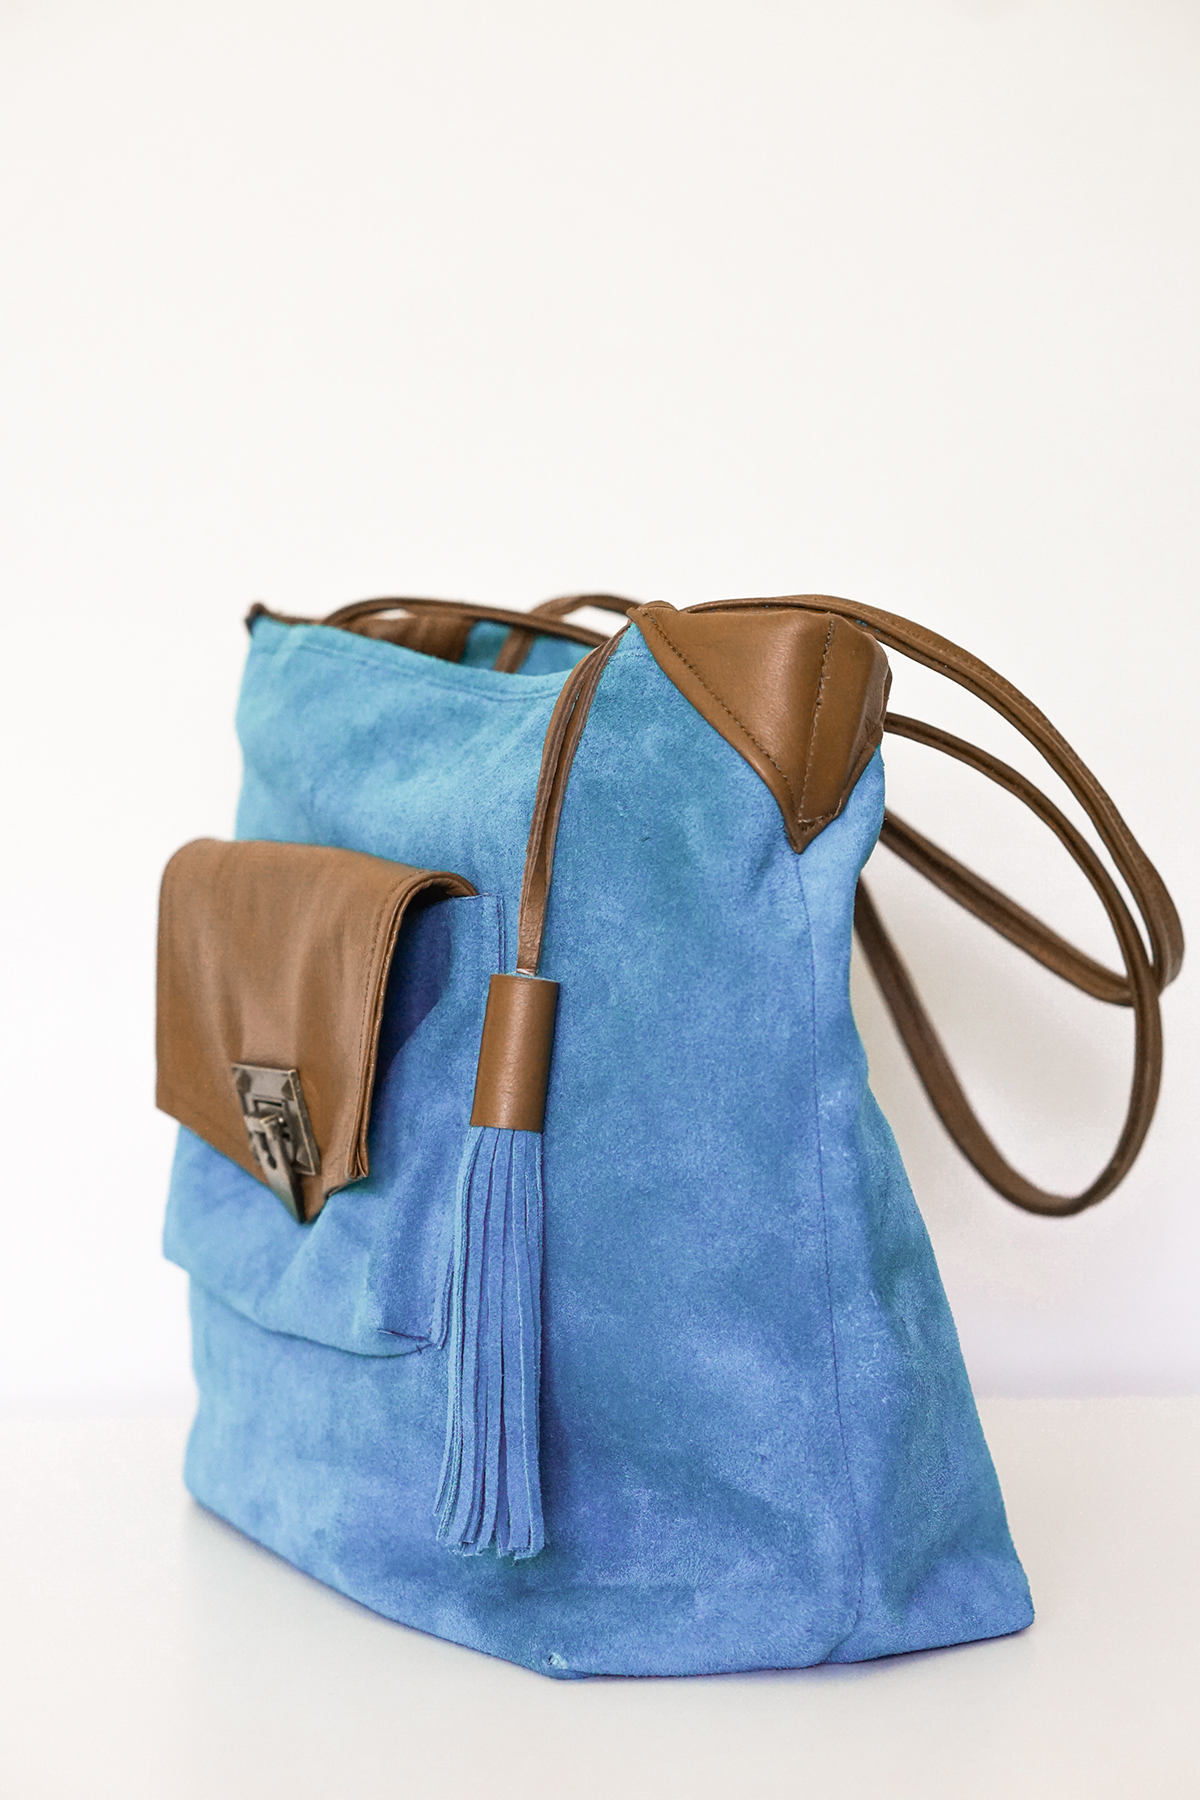 Tote Bag Handbag Design leather sewing contrast blue